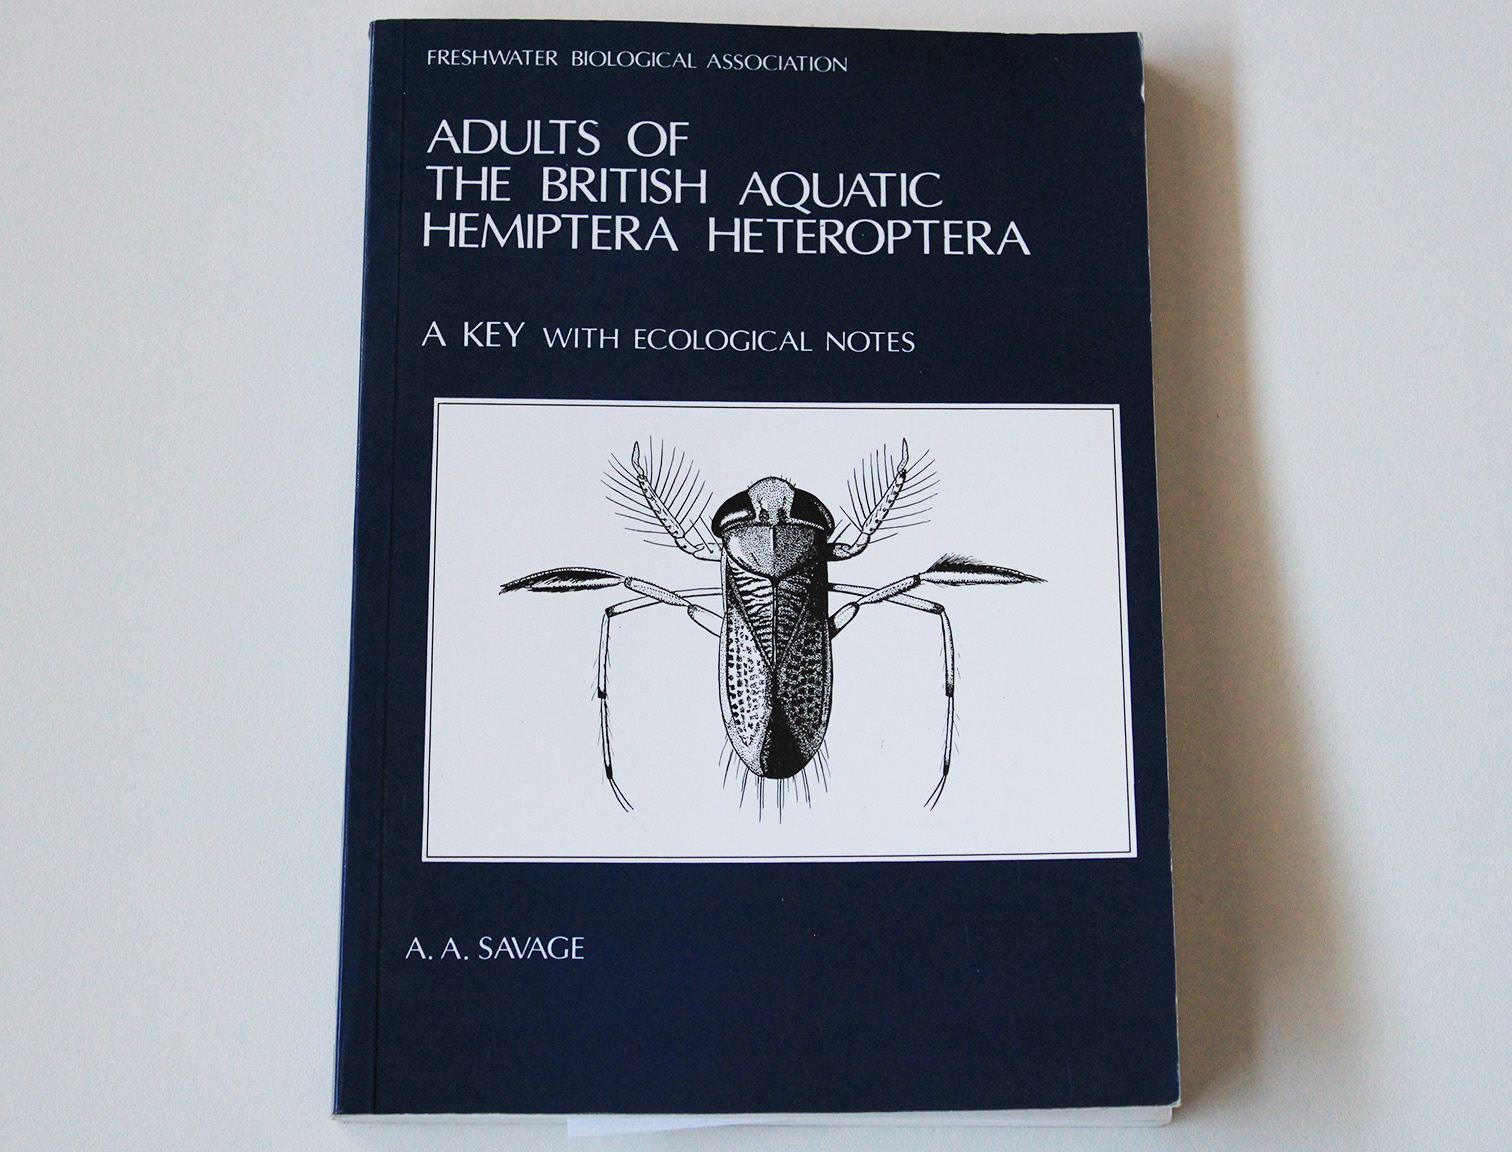 aquatic hemiptera heteroptera